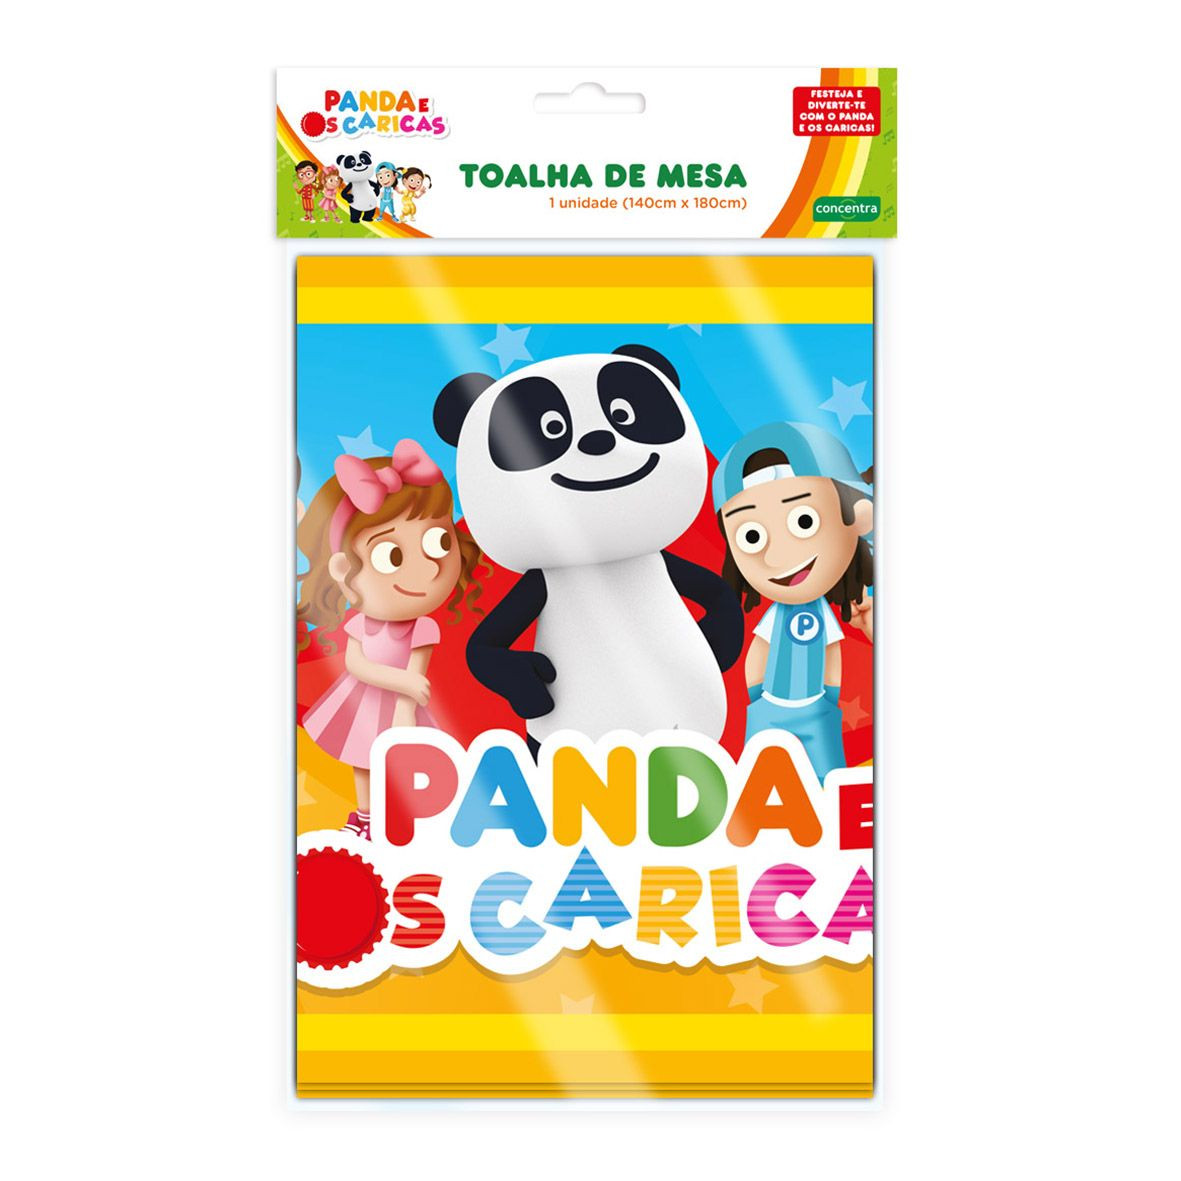 Canal Panda - Sabado é dia de colorir! Vê os diferentes